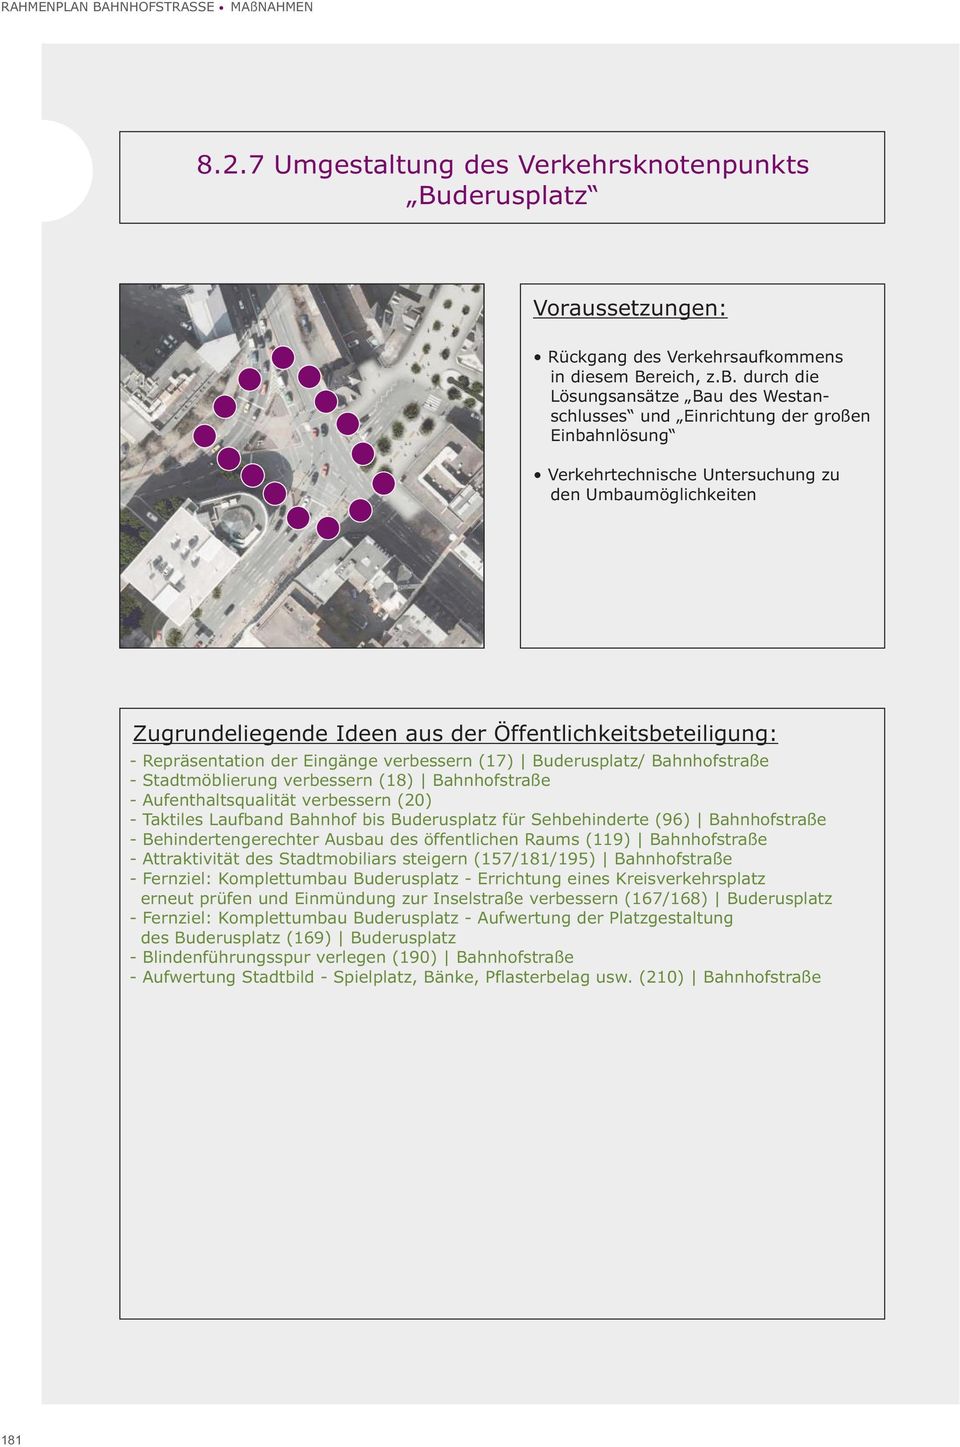 Buderusplatz/ Bahnhofstraße - Stadtmöblierung verbessern (18) Bahnhofstraße - Aufenthaltsqualität verbessern (20) - Taktiles Laufband Bahnhof bis Buderusplatz für Sehbehinderte (96) Bahnhofstraße -